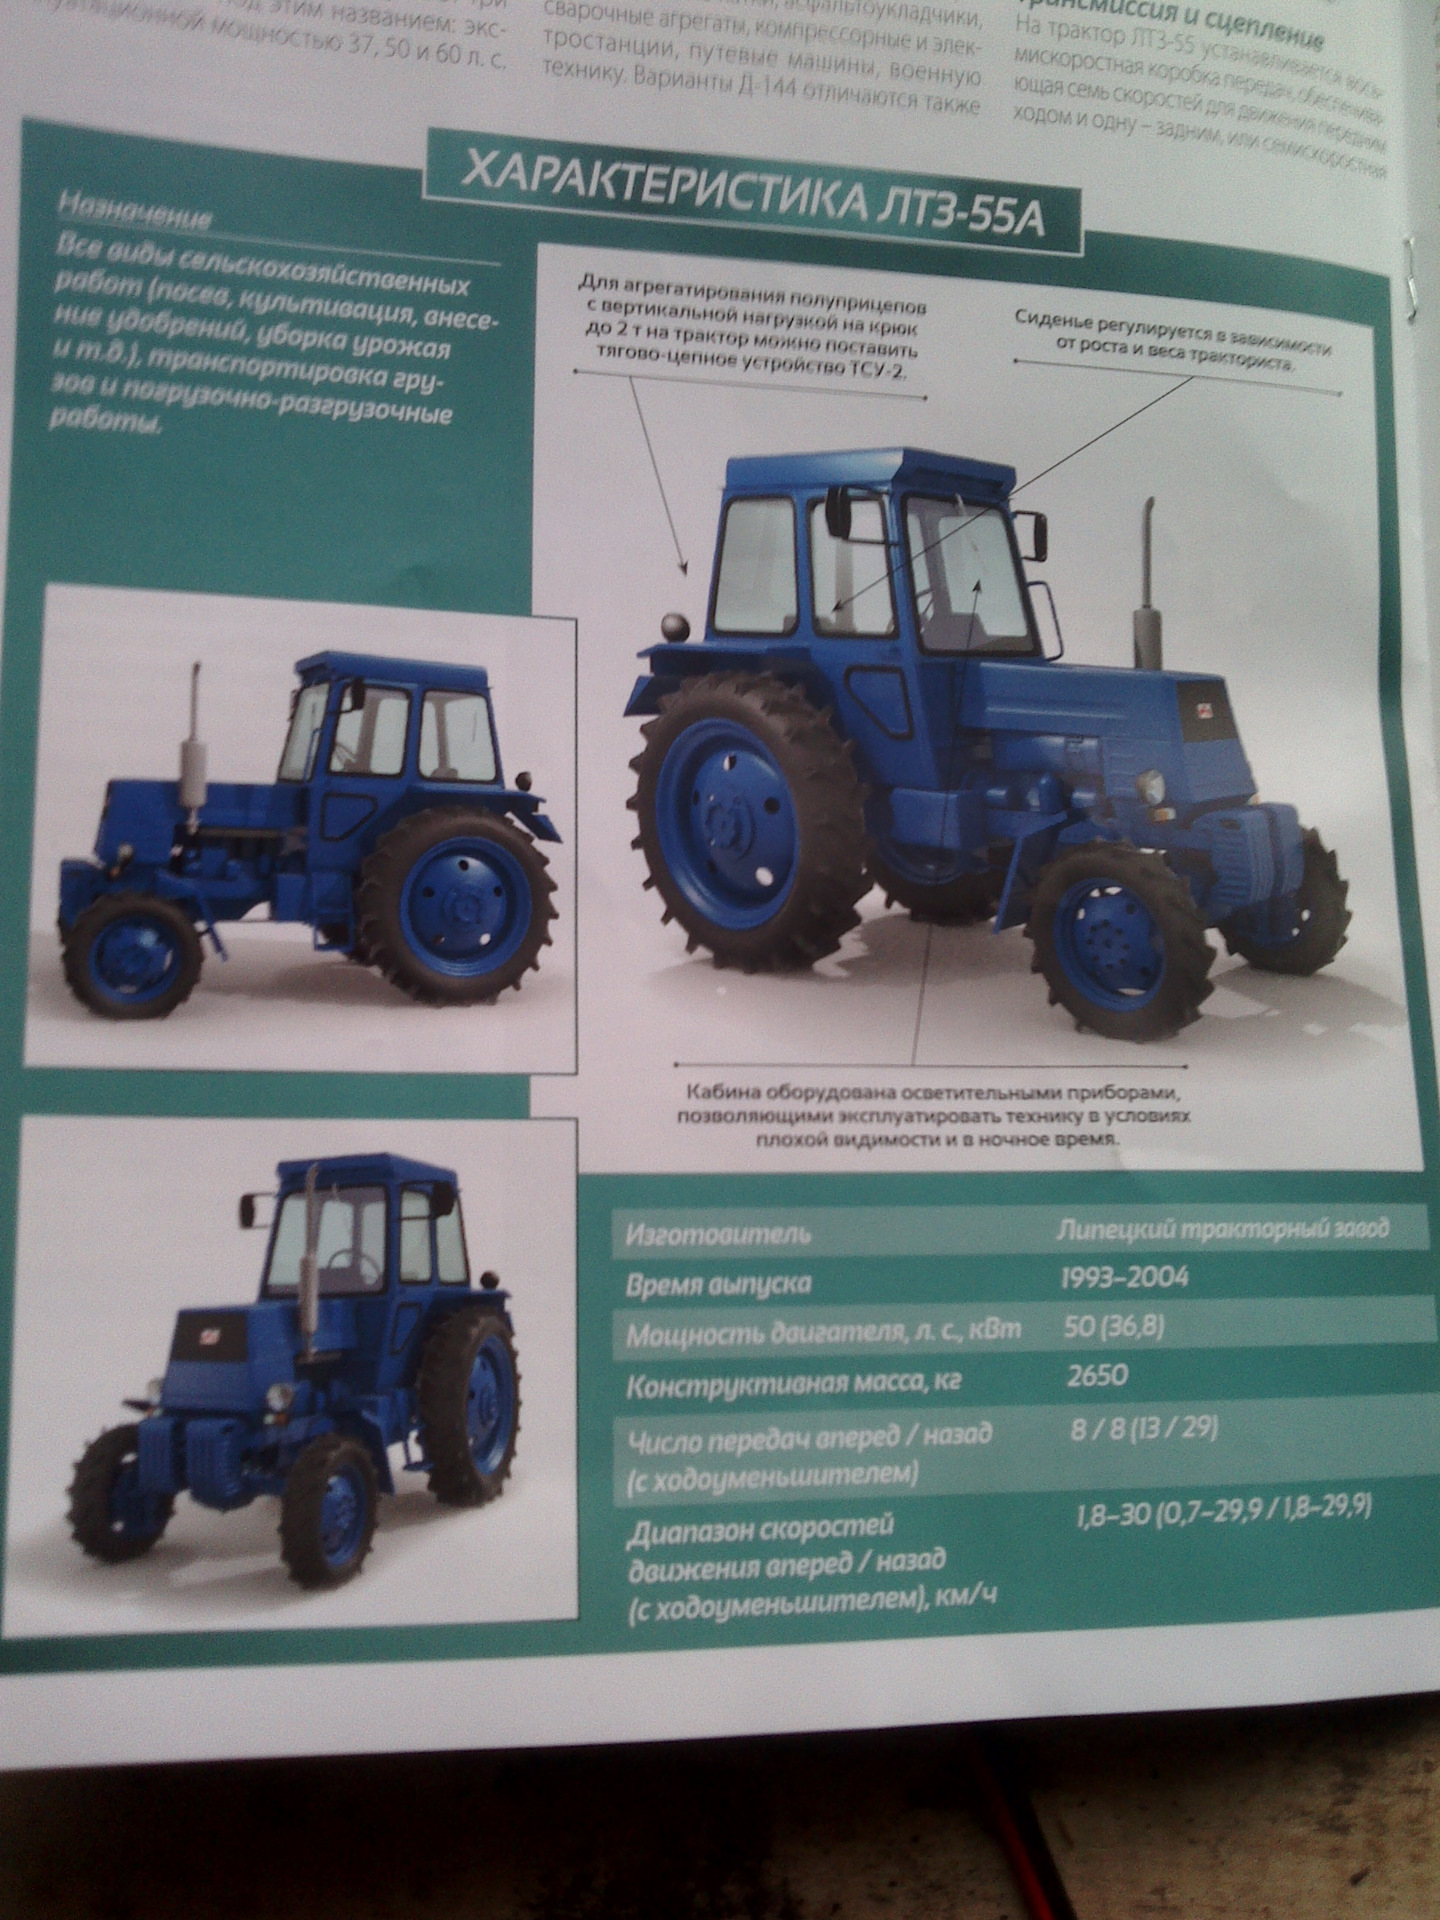 Подробные технические характеристики трактора лтз-55